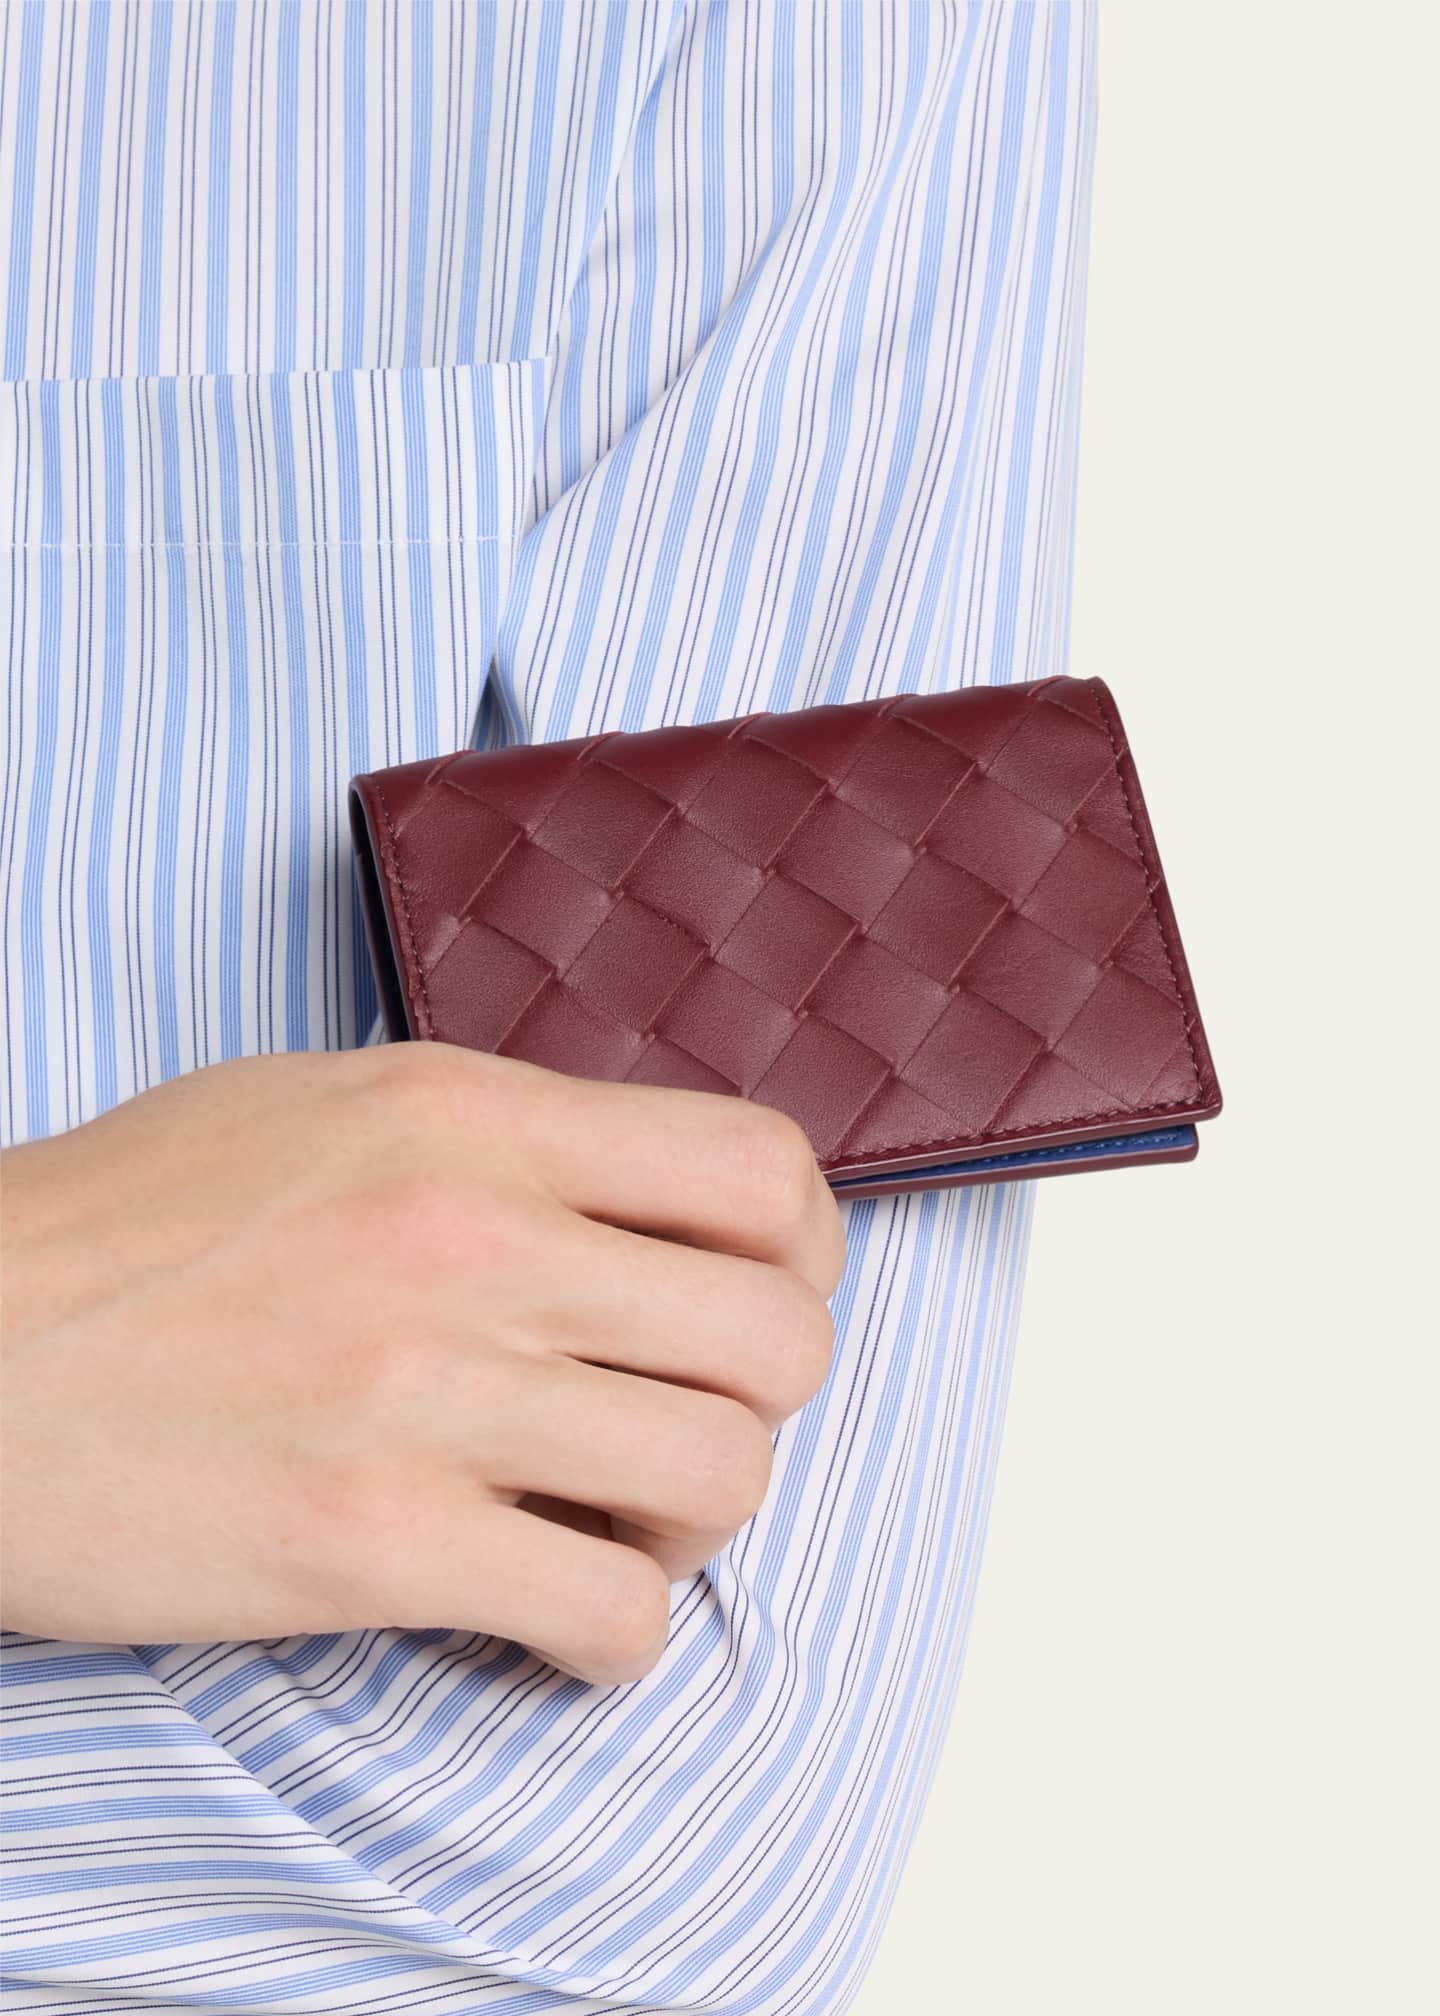 Bottega Veneta Men's Intreccio Leather Wallet